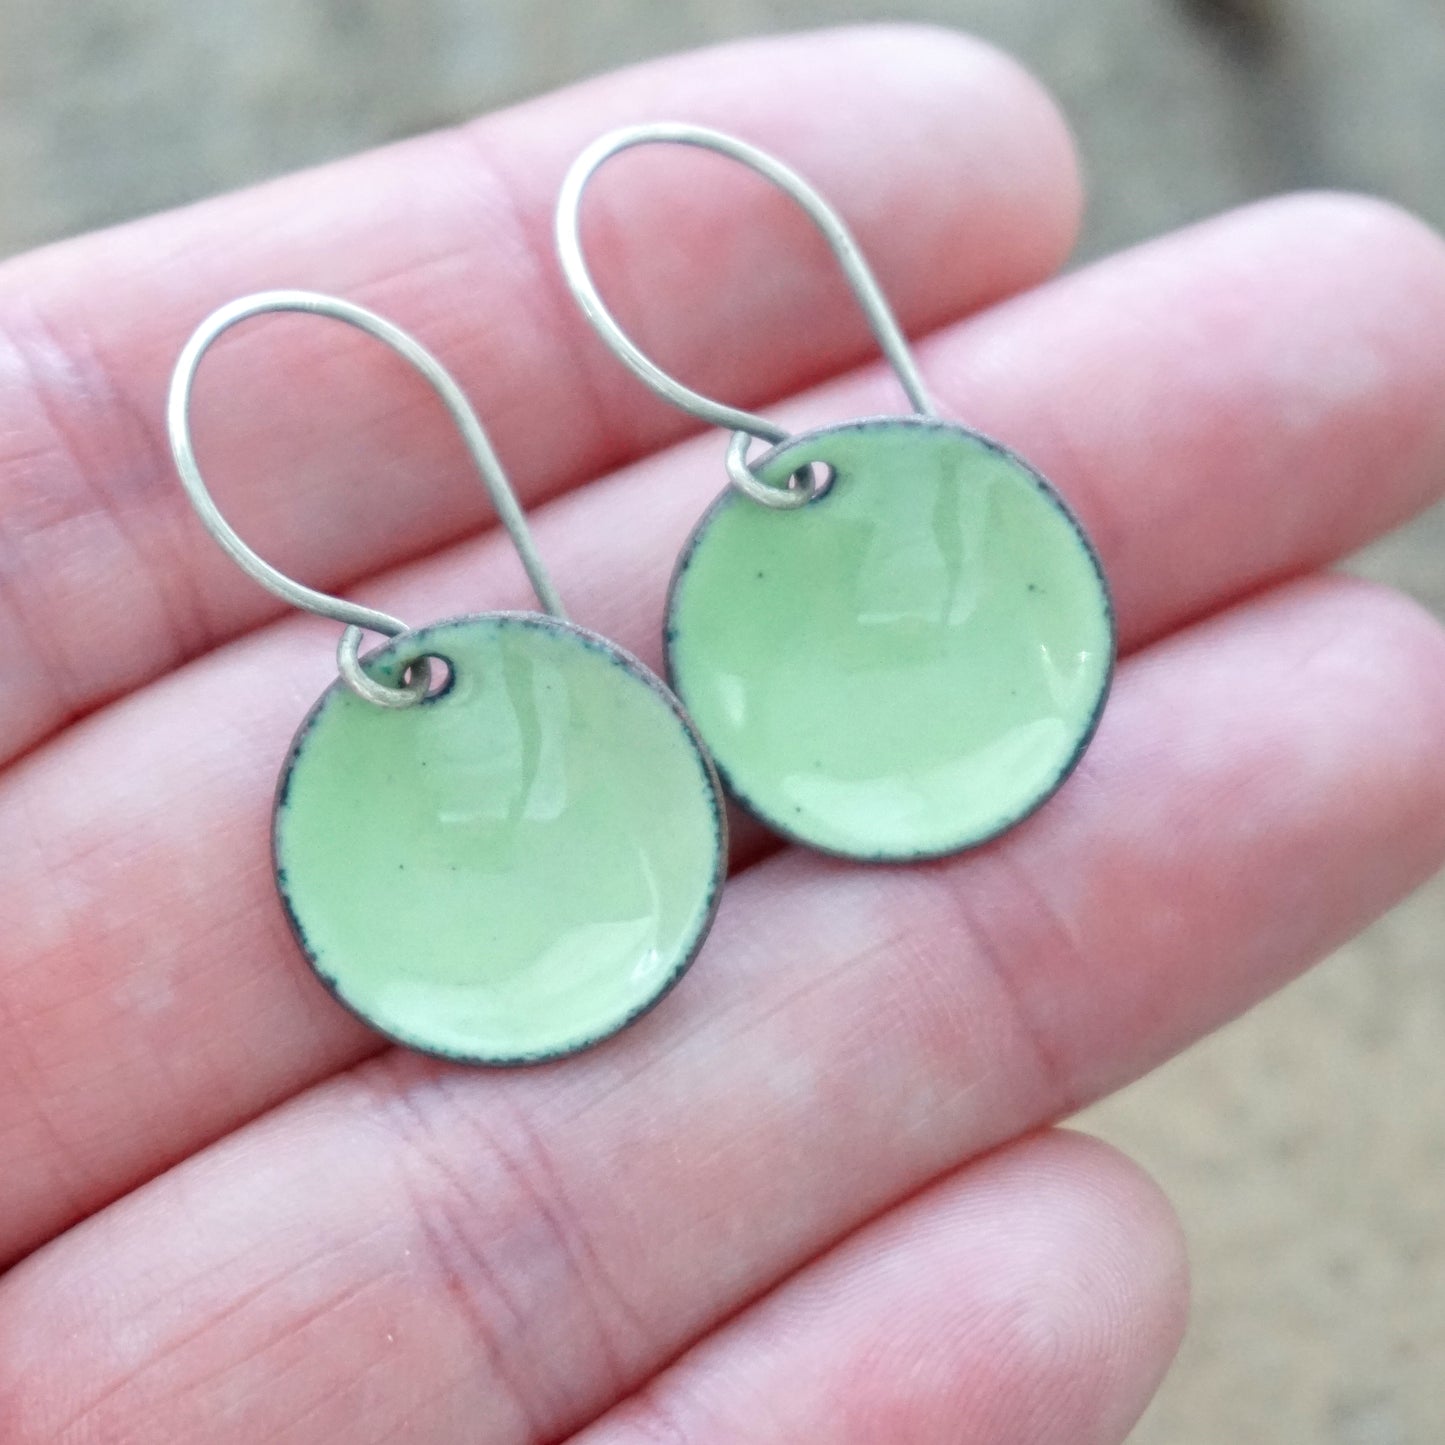 Light Green Enamel Disc Earrings